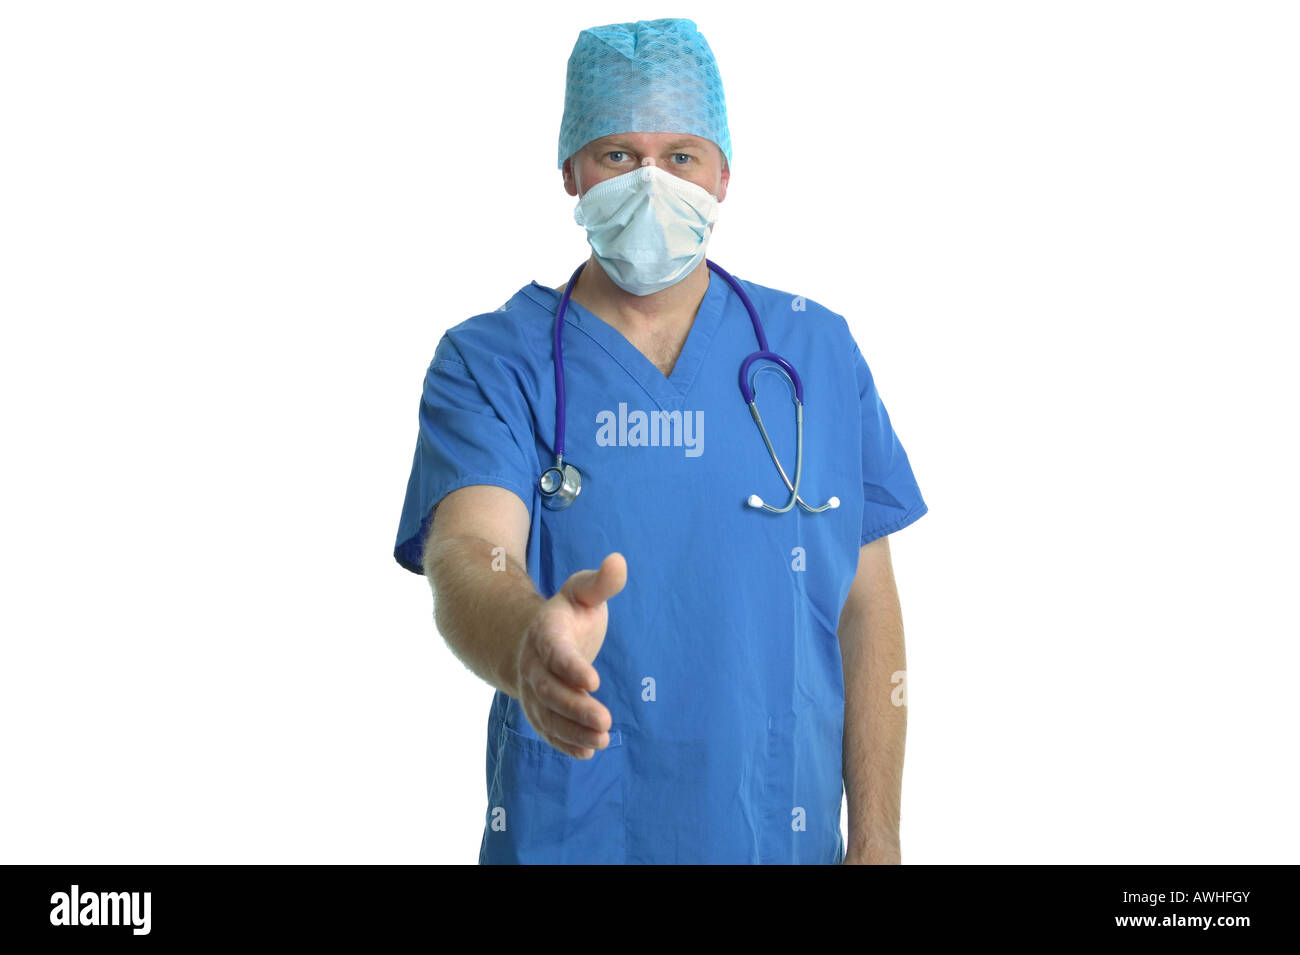 Chirurg in Scrubs und Maske mit einem einladenden Handschlag vor einem weißen Hintergrund Stockfoto